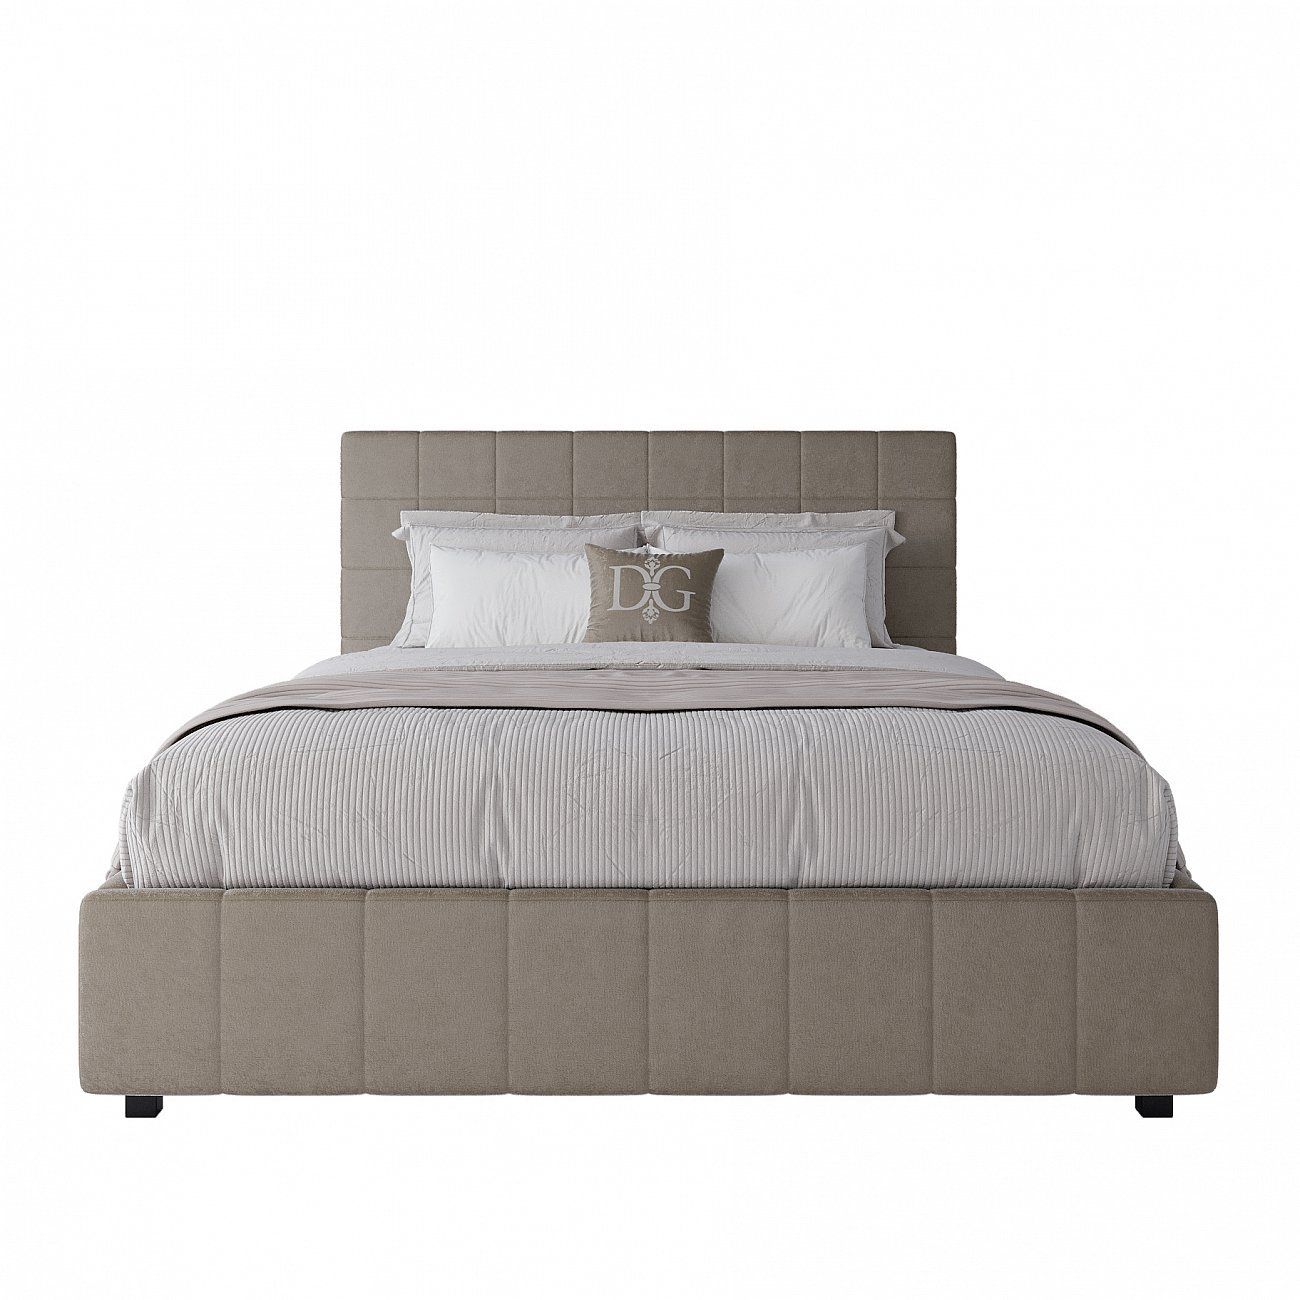 Double bed 160x200 grey-beige Shining Modern